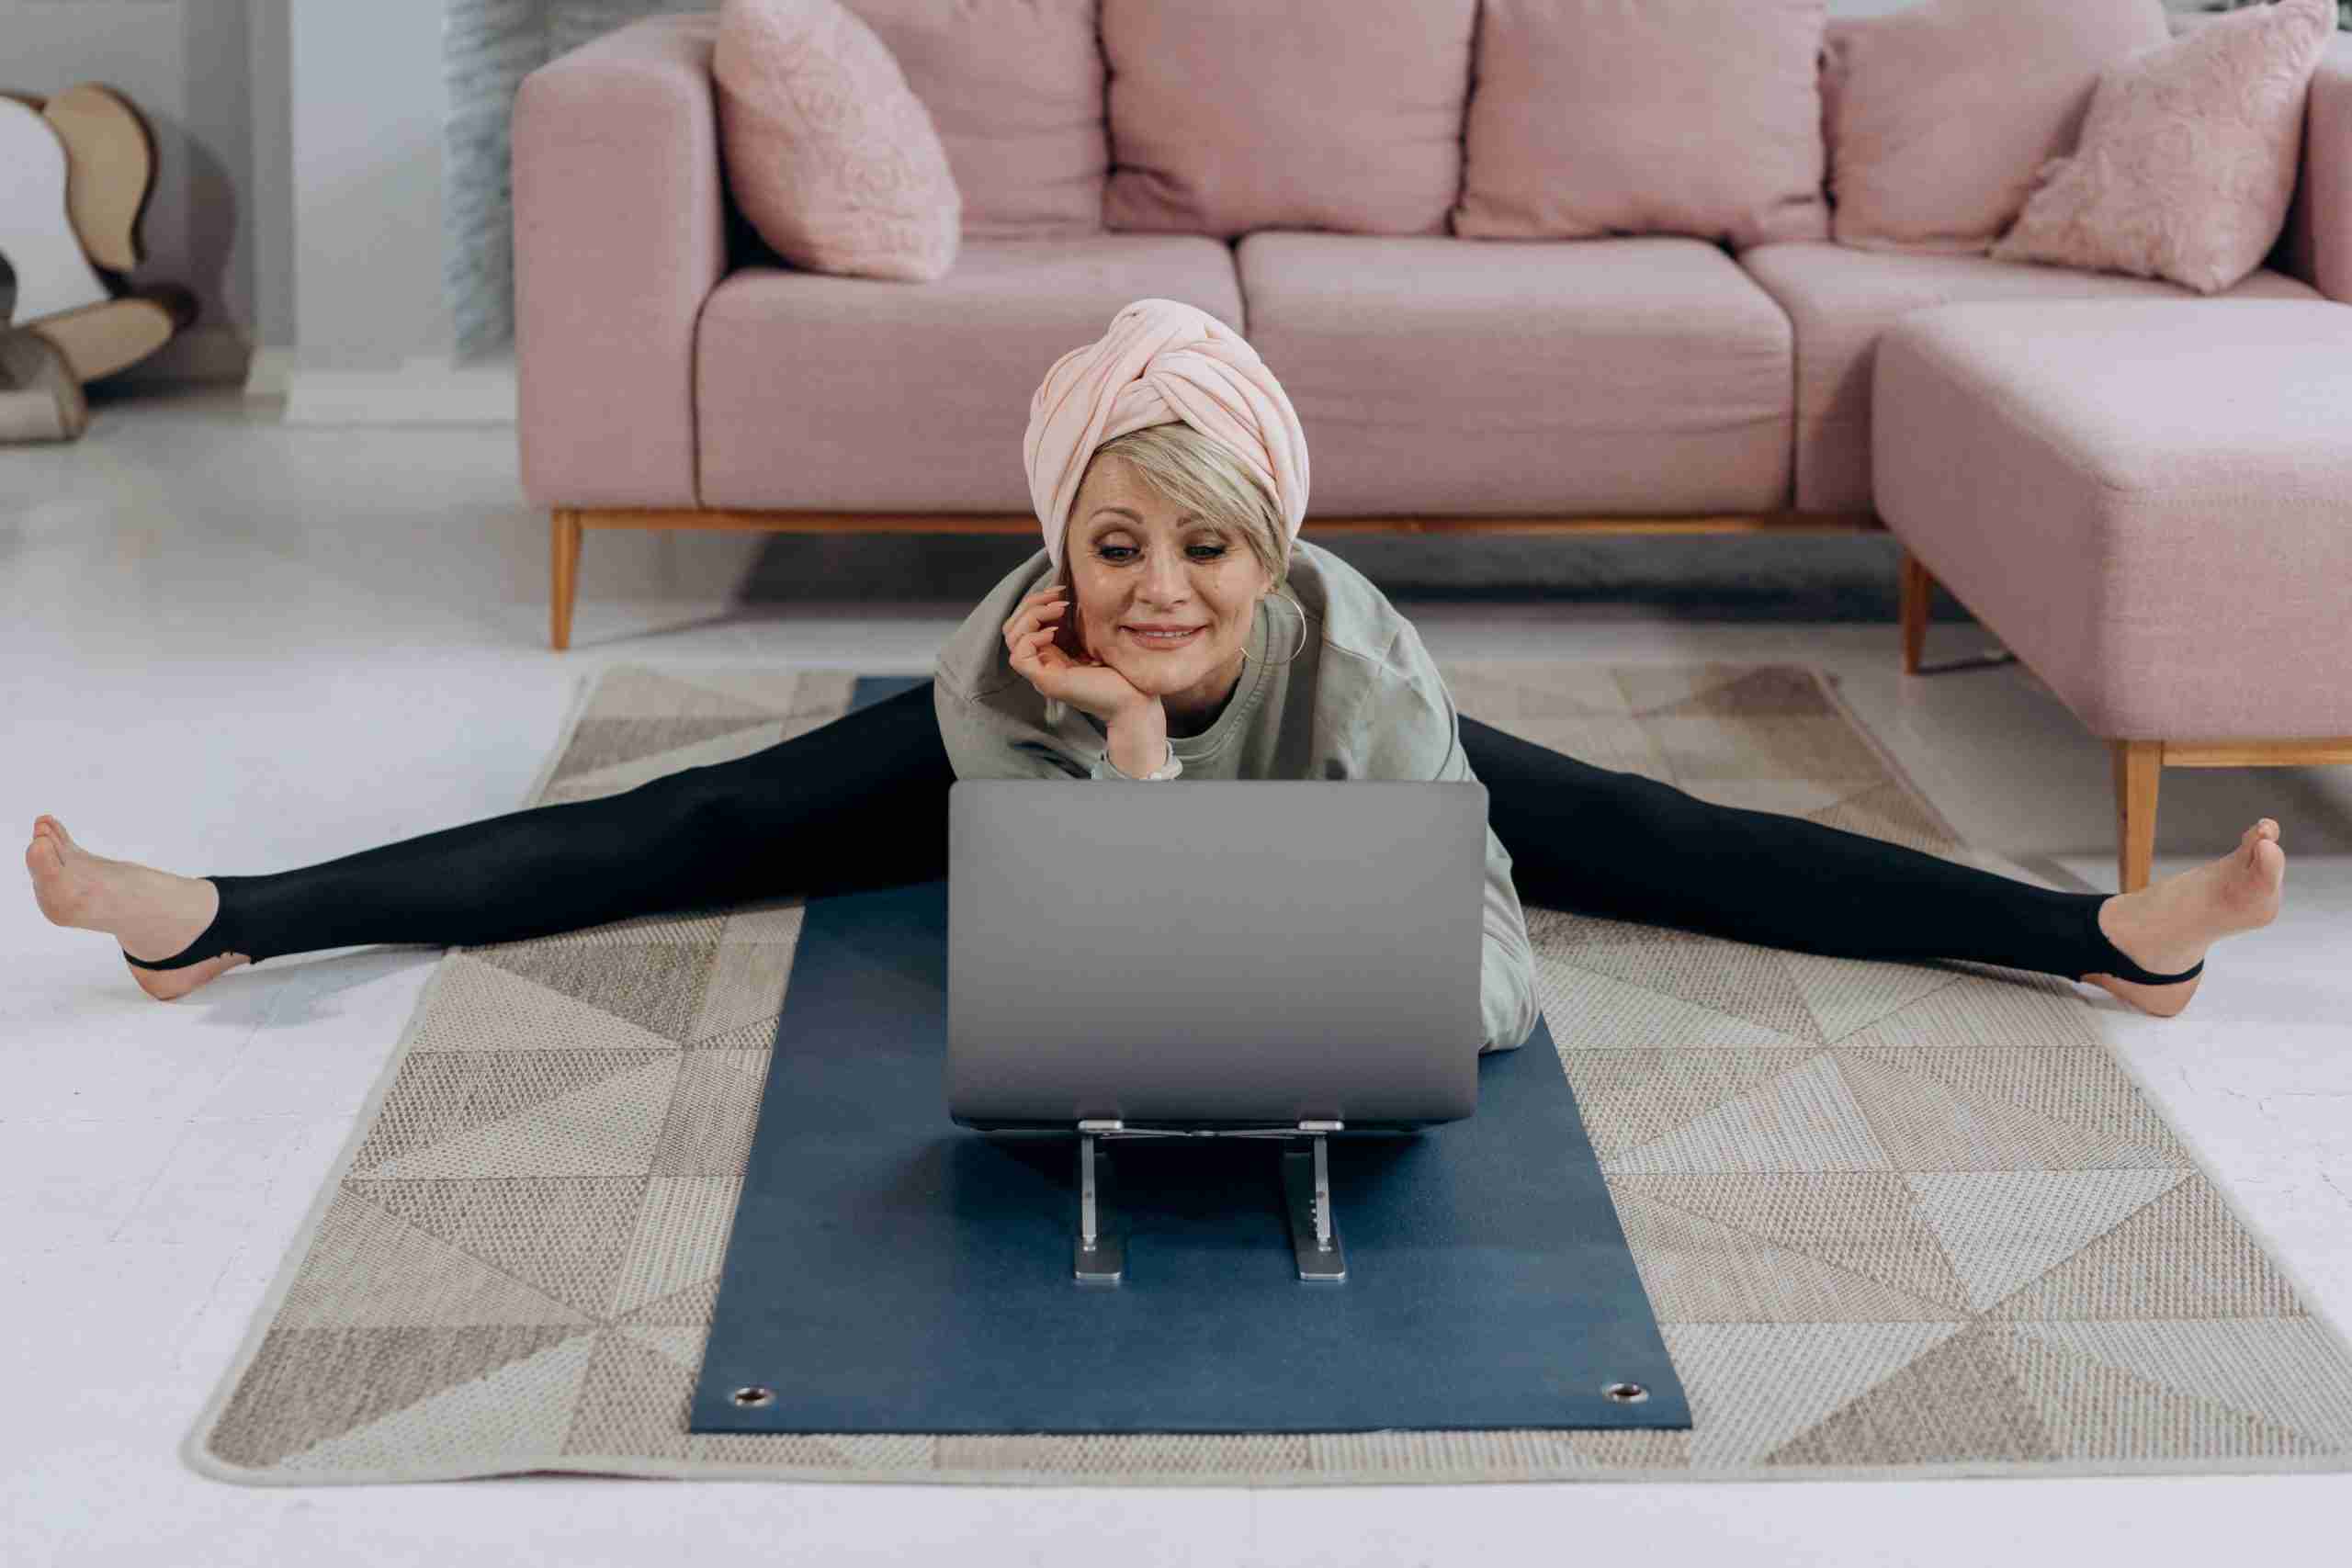 oudere dame die zich voor een laptop op een tapijt uitrekt; sport is goed op elke leeftijd gezondheid welzijn before-night-falls.com blog
